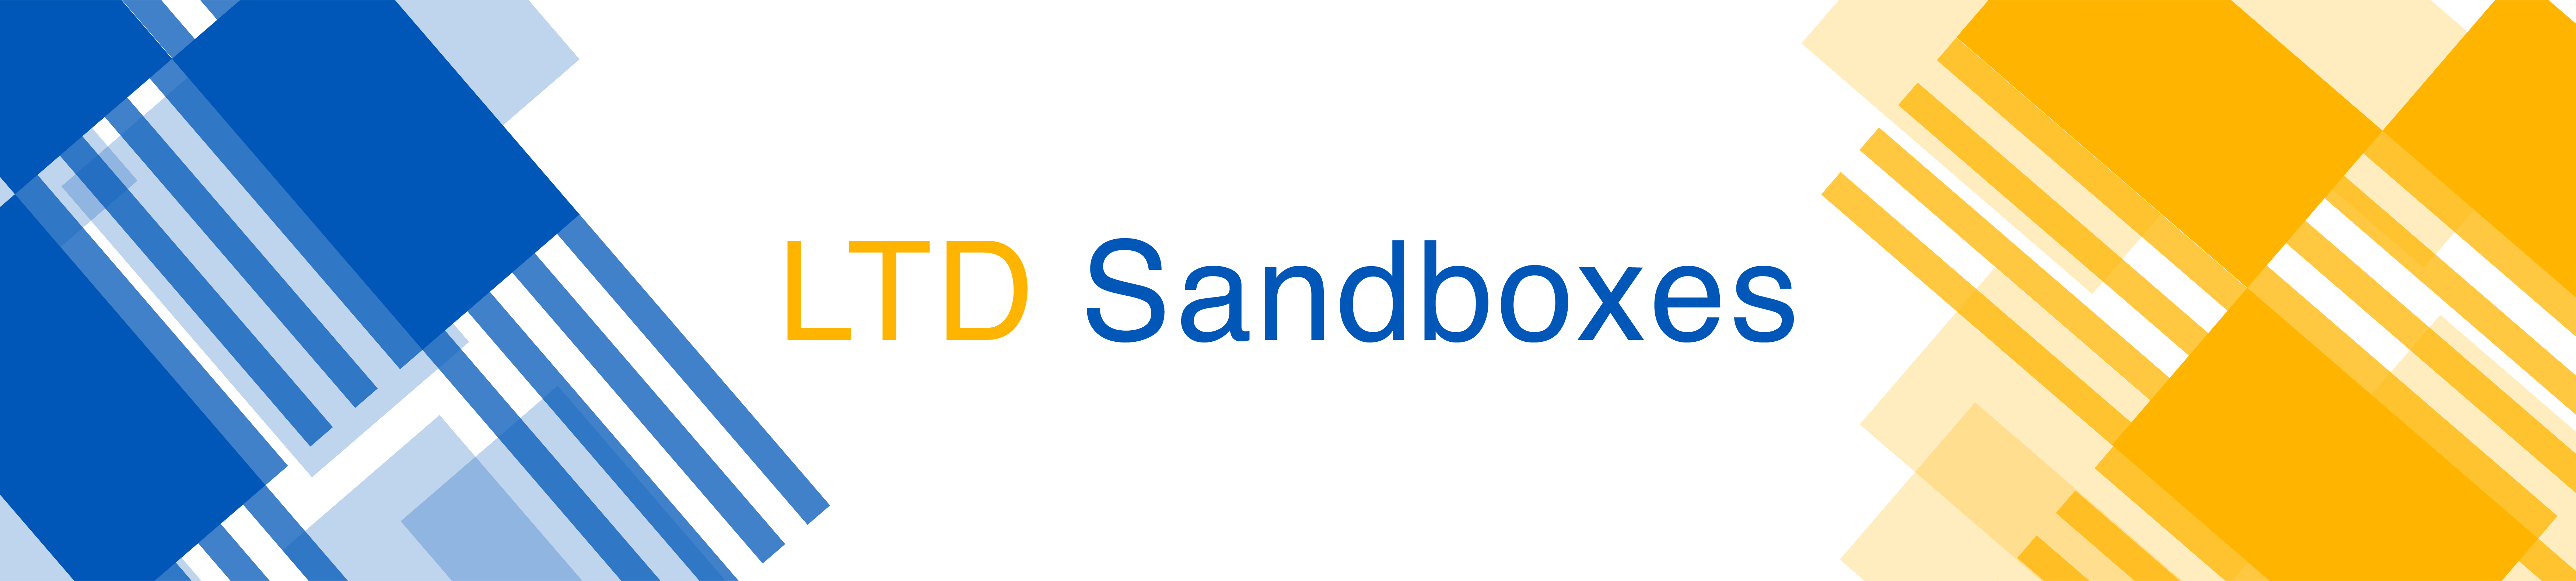 LTD Sandboxes